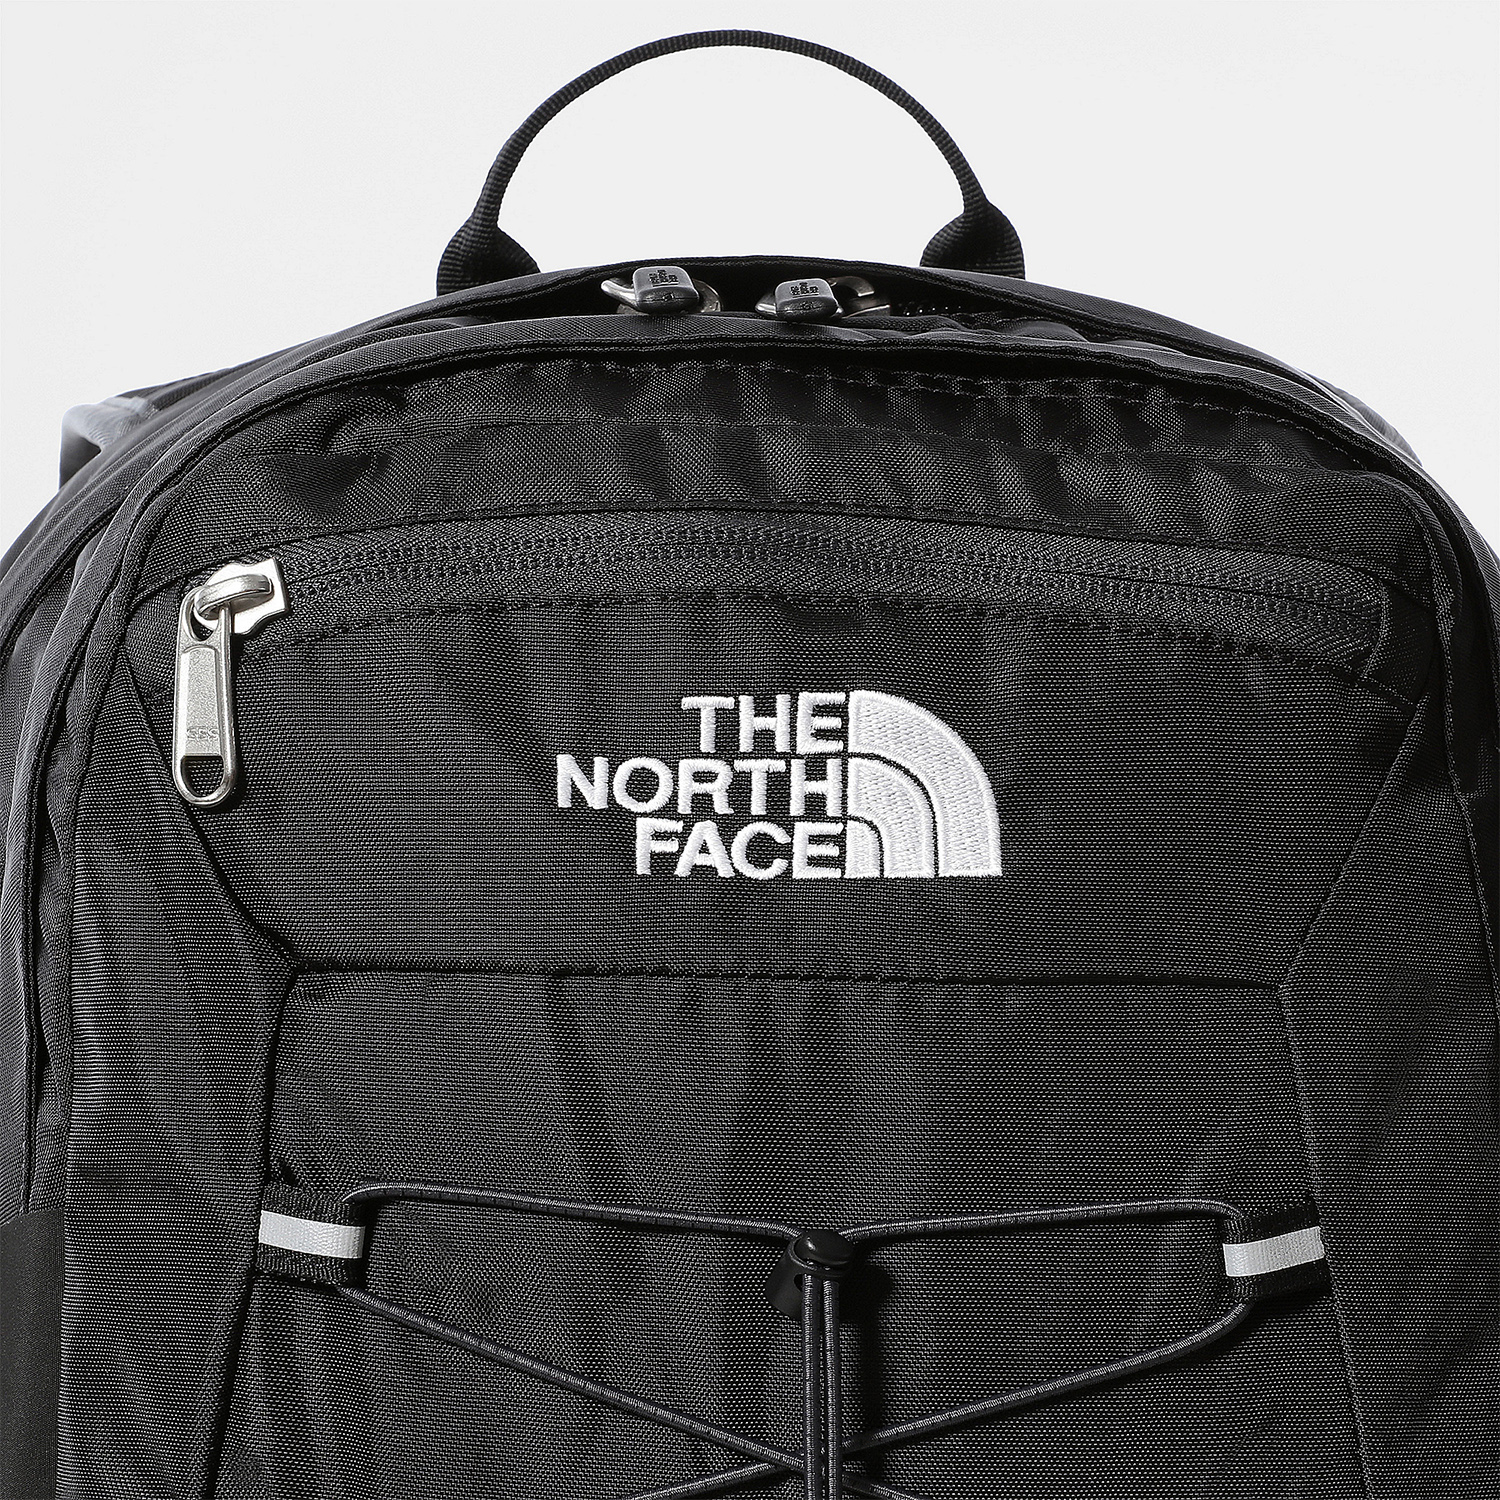 The North Face Borealis Classic Mochila - Black